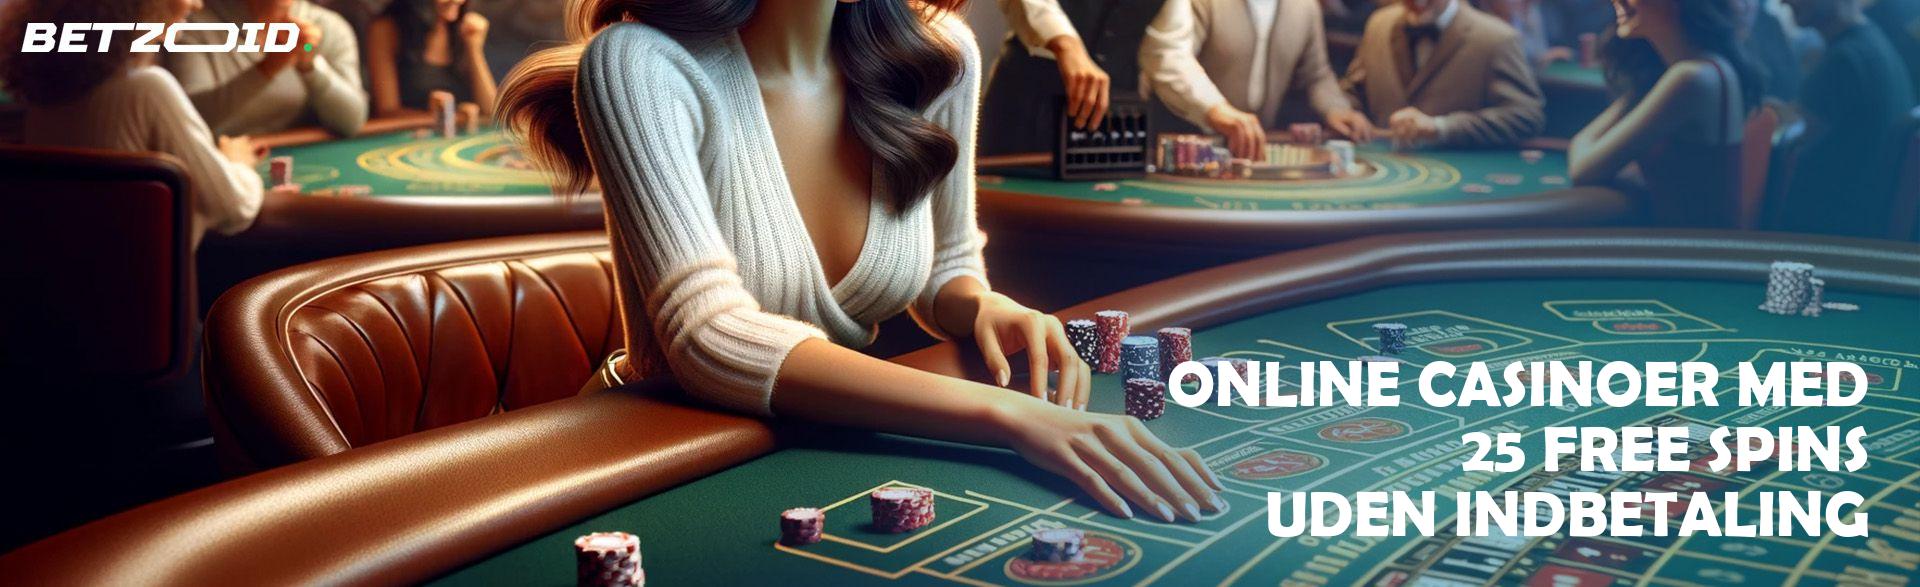 Online Casinoer med 25 Free Spins uden Indbetaling.